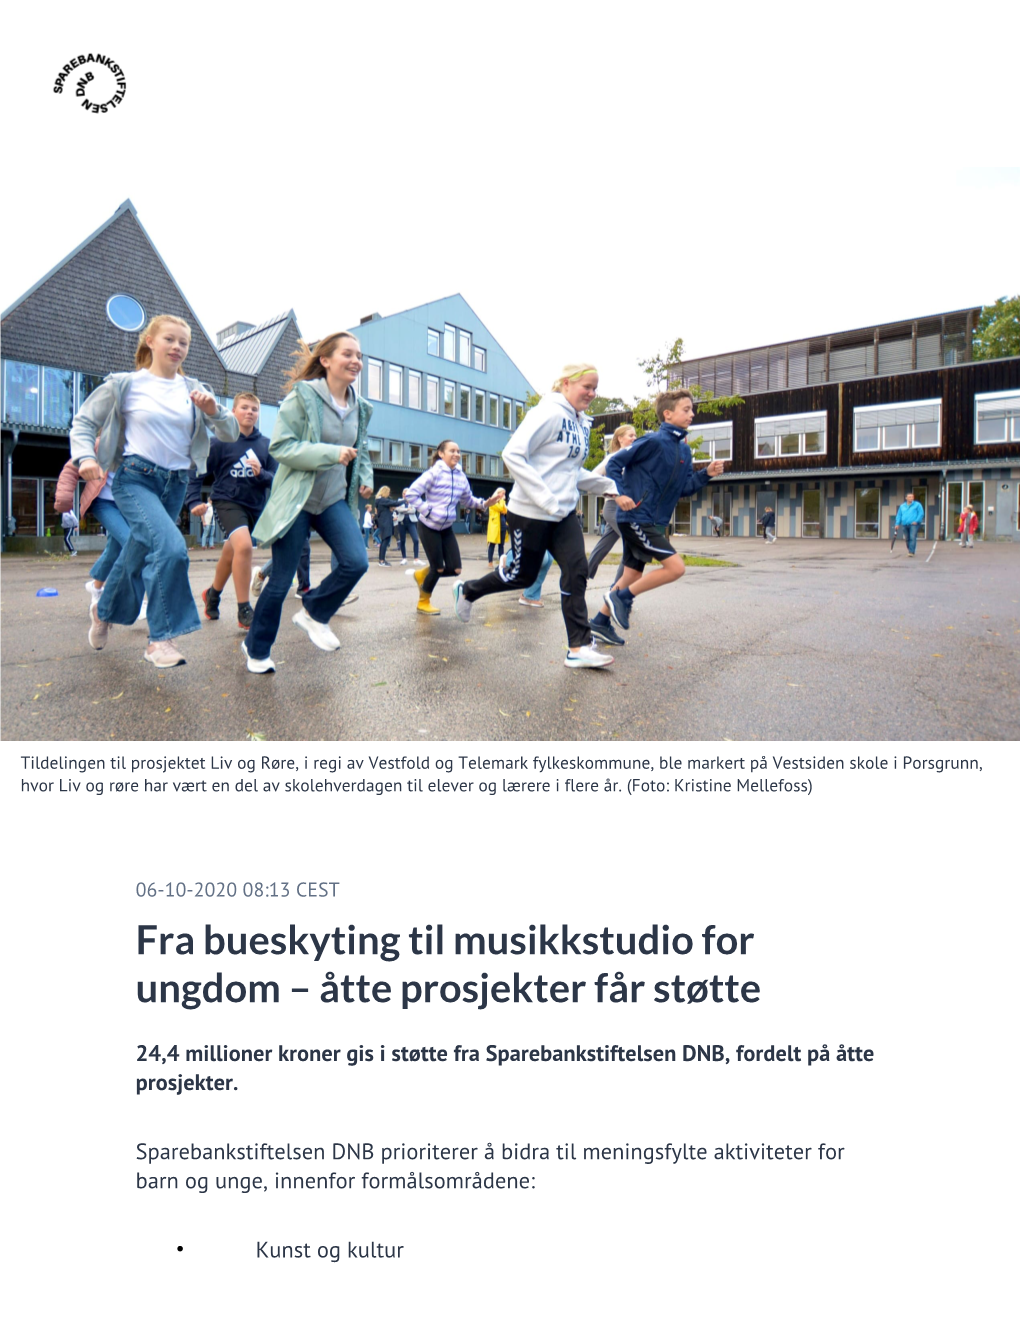 Fra Bueskyting Til Musikkstudio for Ungdom – Åtte Prosjekter Får Støtte